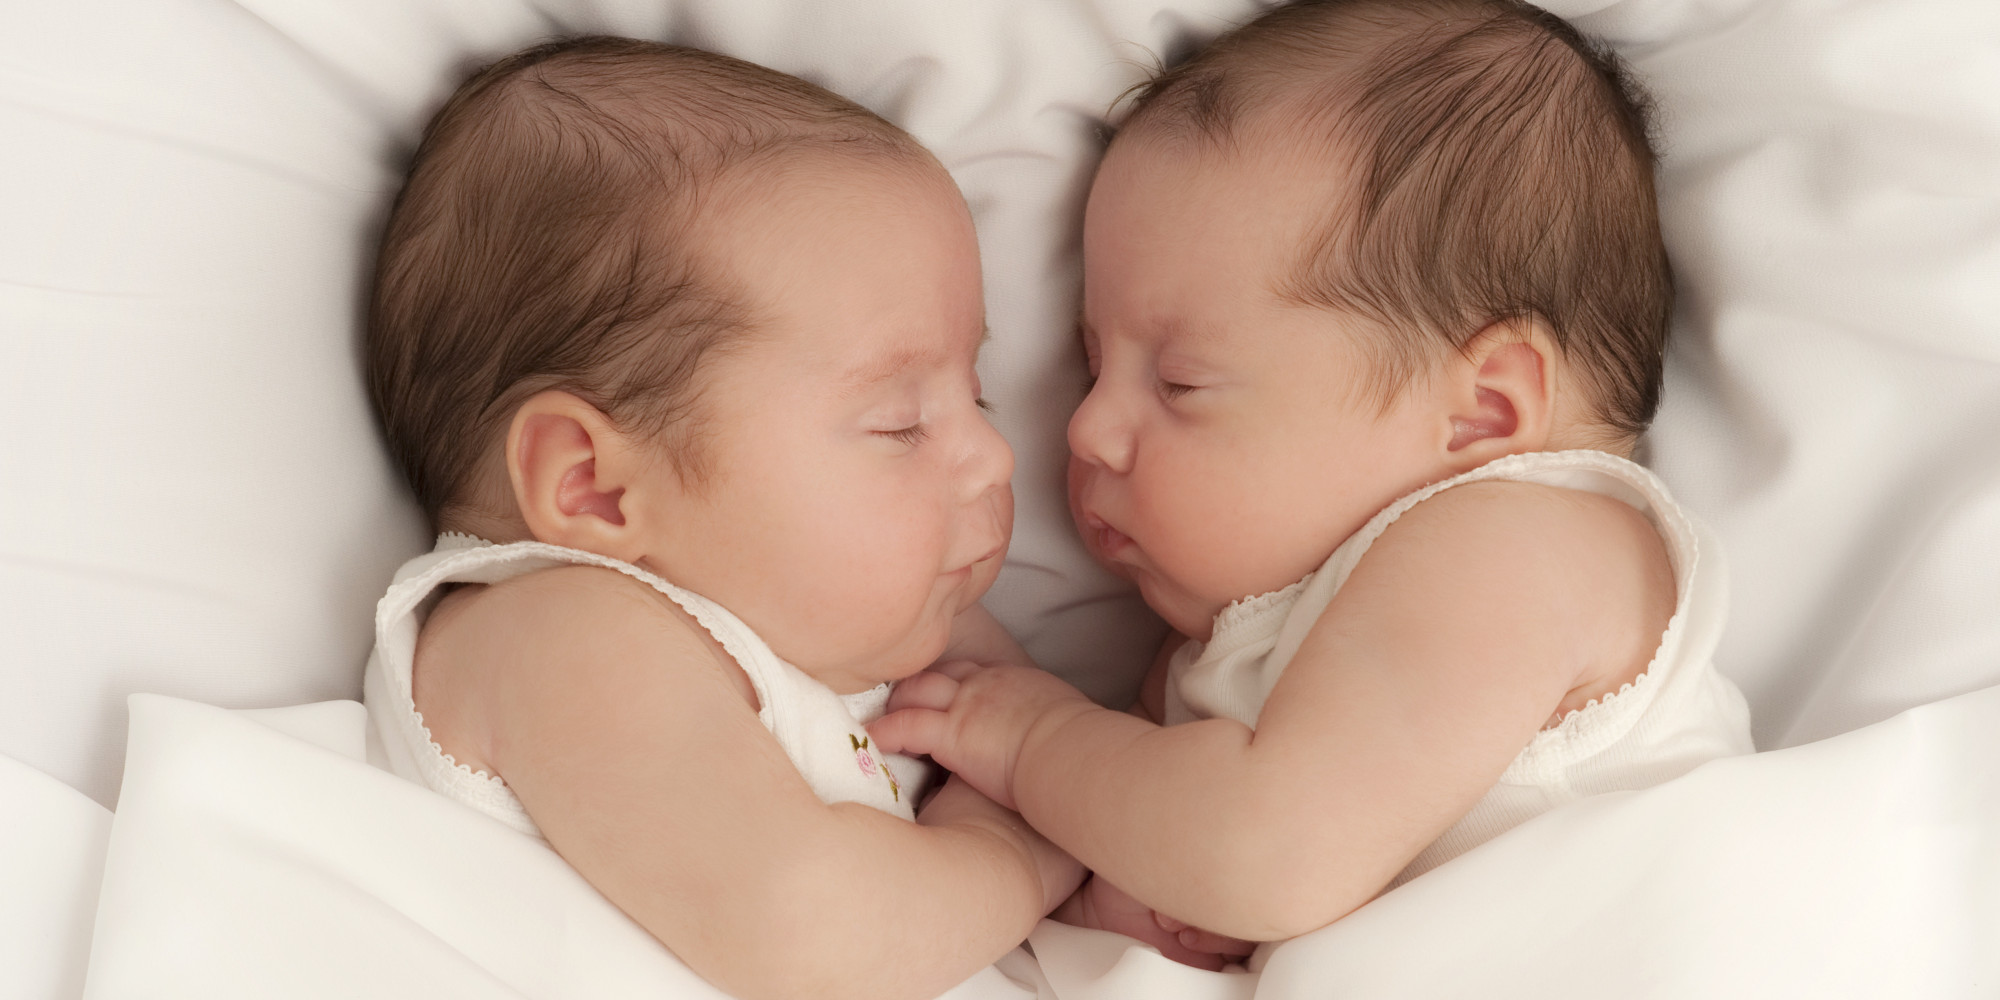 10 neparasti fakti par Dvīņu zīmē dzimušajiem